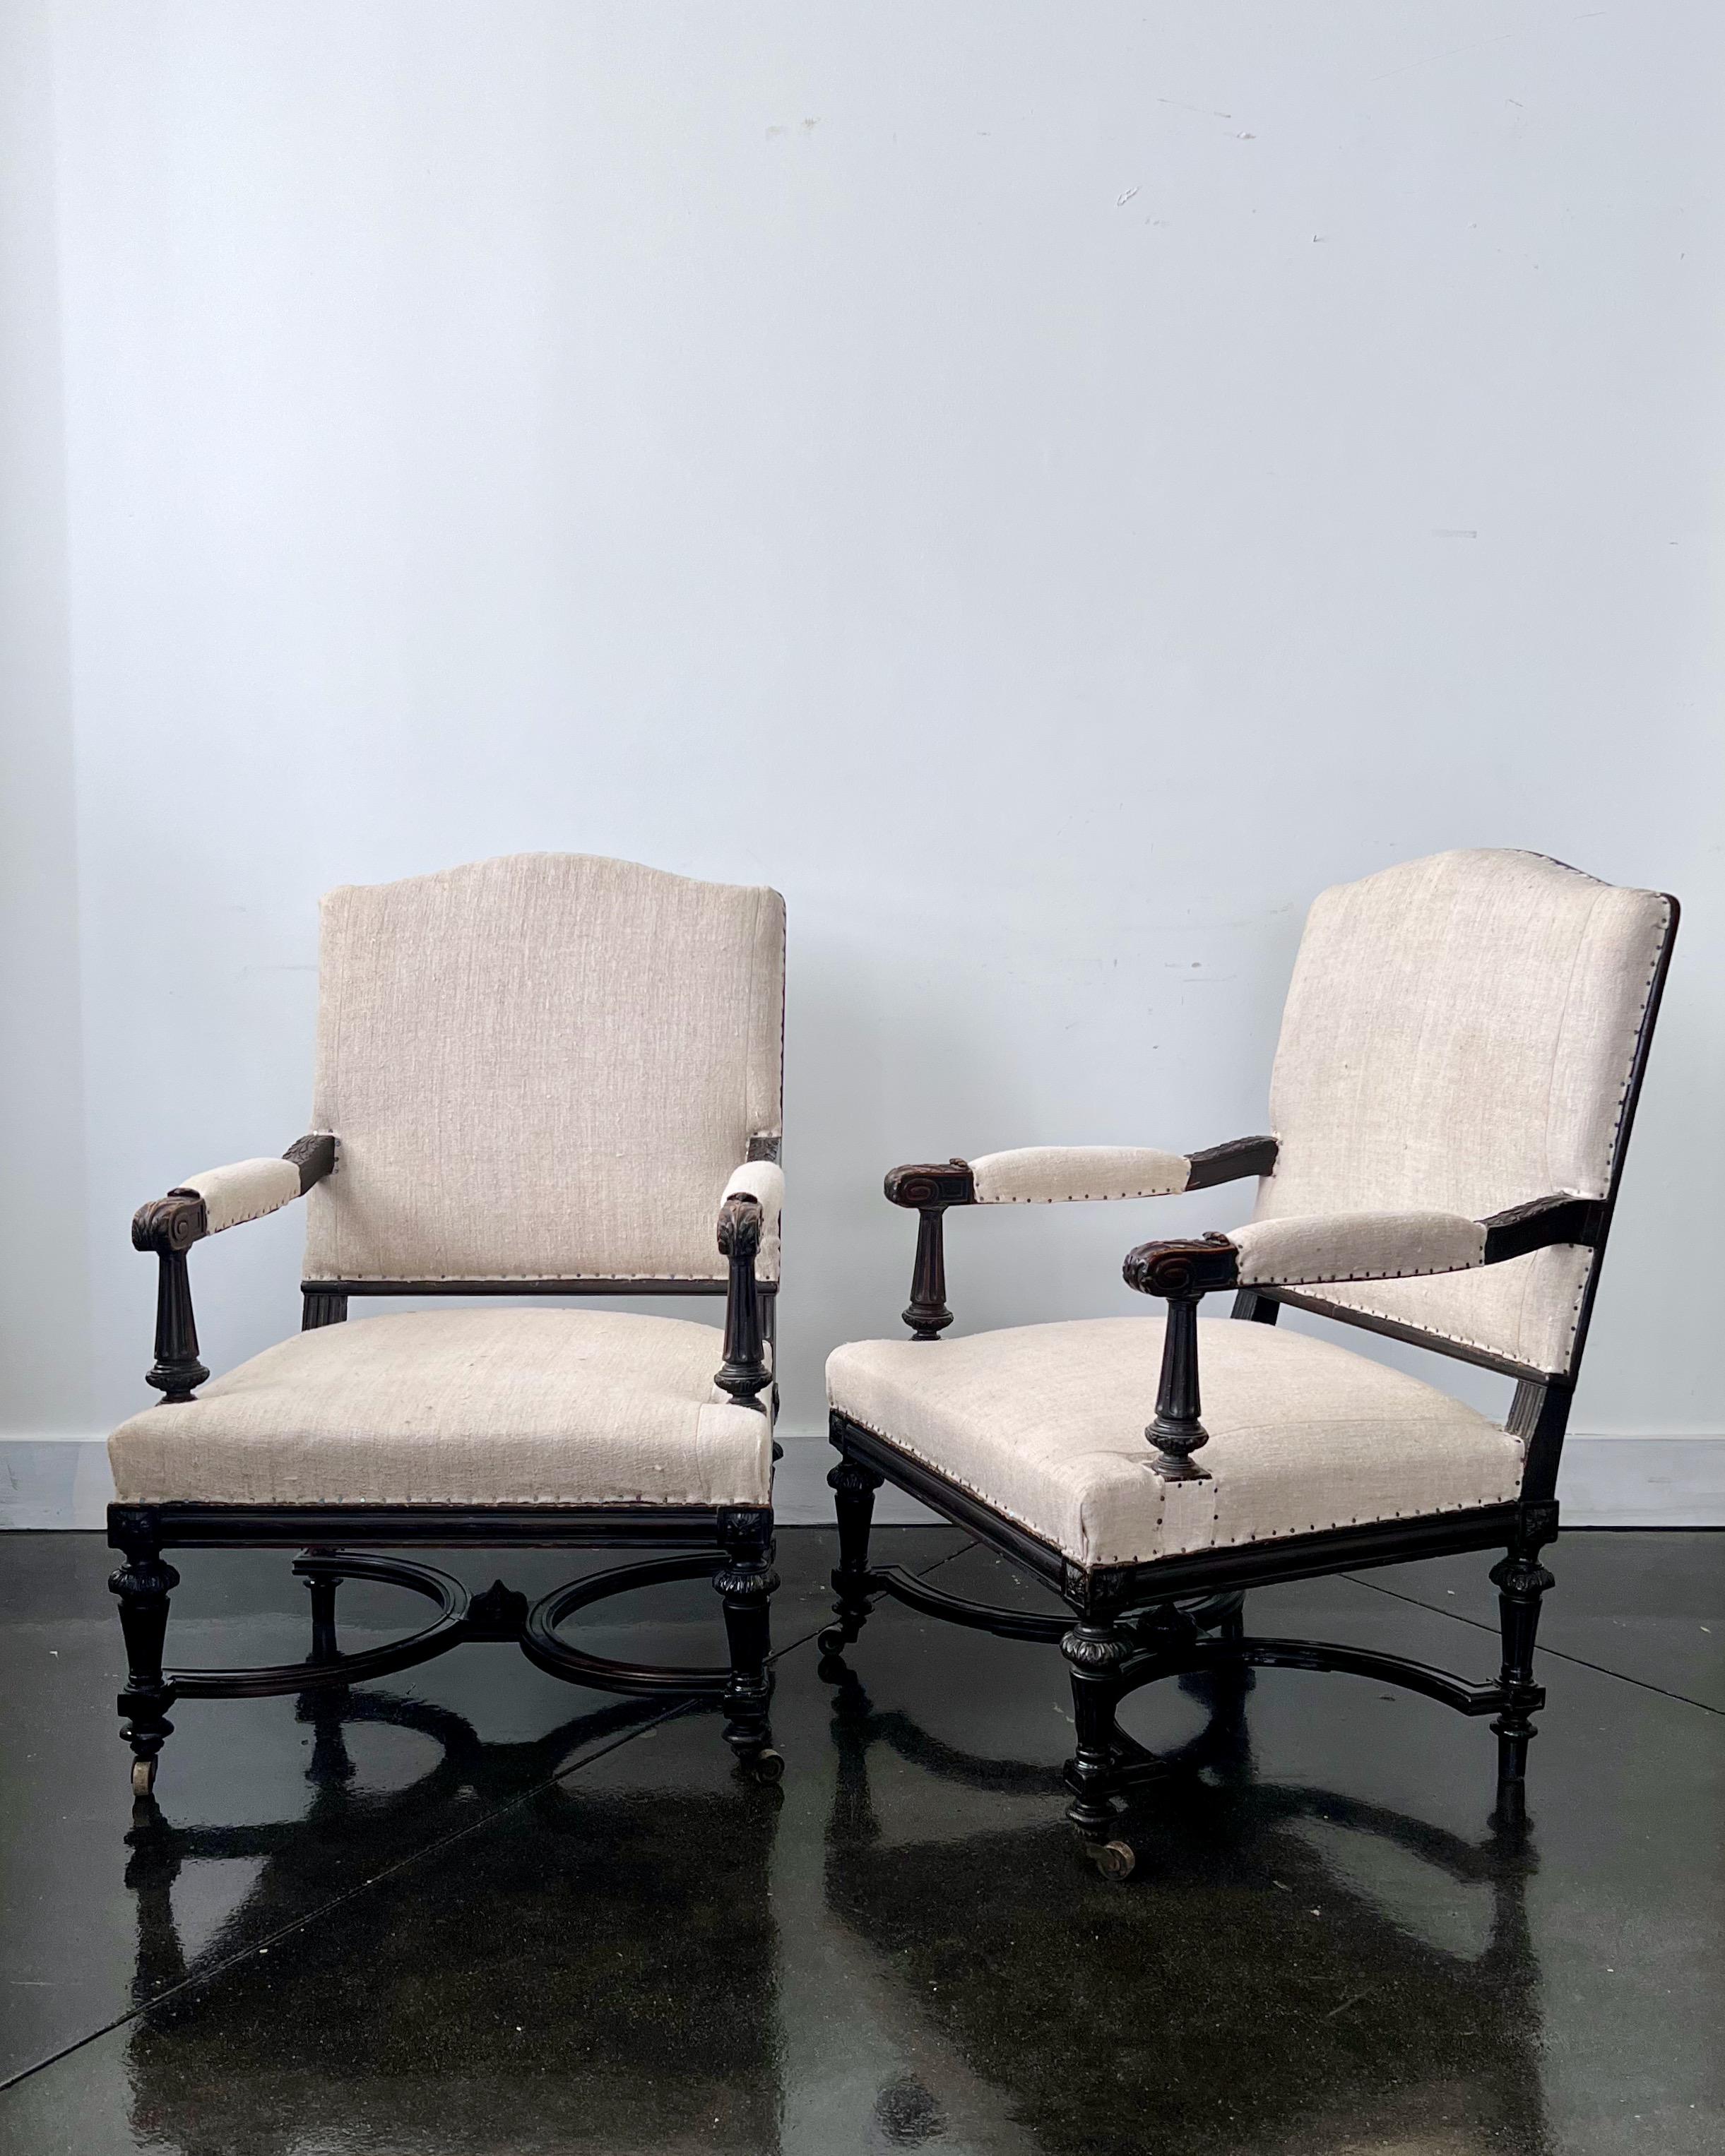 Ein hübsches, sehr großzügiges Format  Paar ebonisierte französische Napoleon-III-Sessel aus dem 19. Jahrhundert mit reich geschnitzten Armlehnen, die auf gedrechselten Beinen mit Rollen an den vorderen Beinen stehen und mit kreuzförmig verzierten